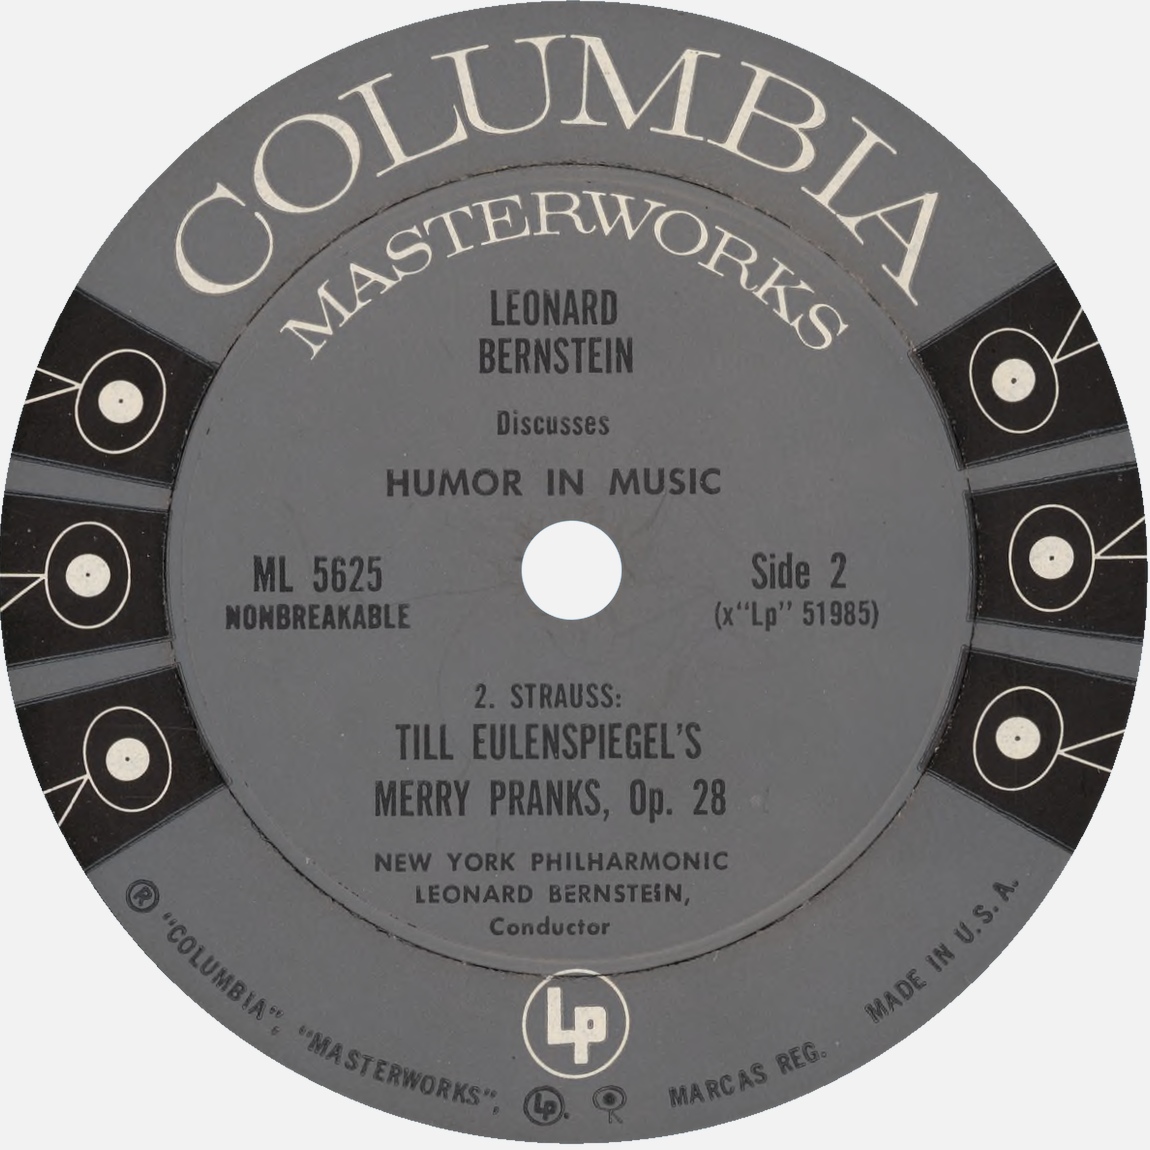 Étiquette verso du disque Columbia Masterworks ML 5625